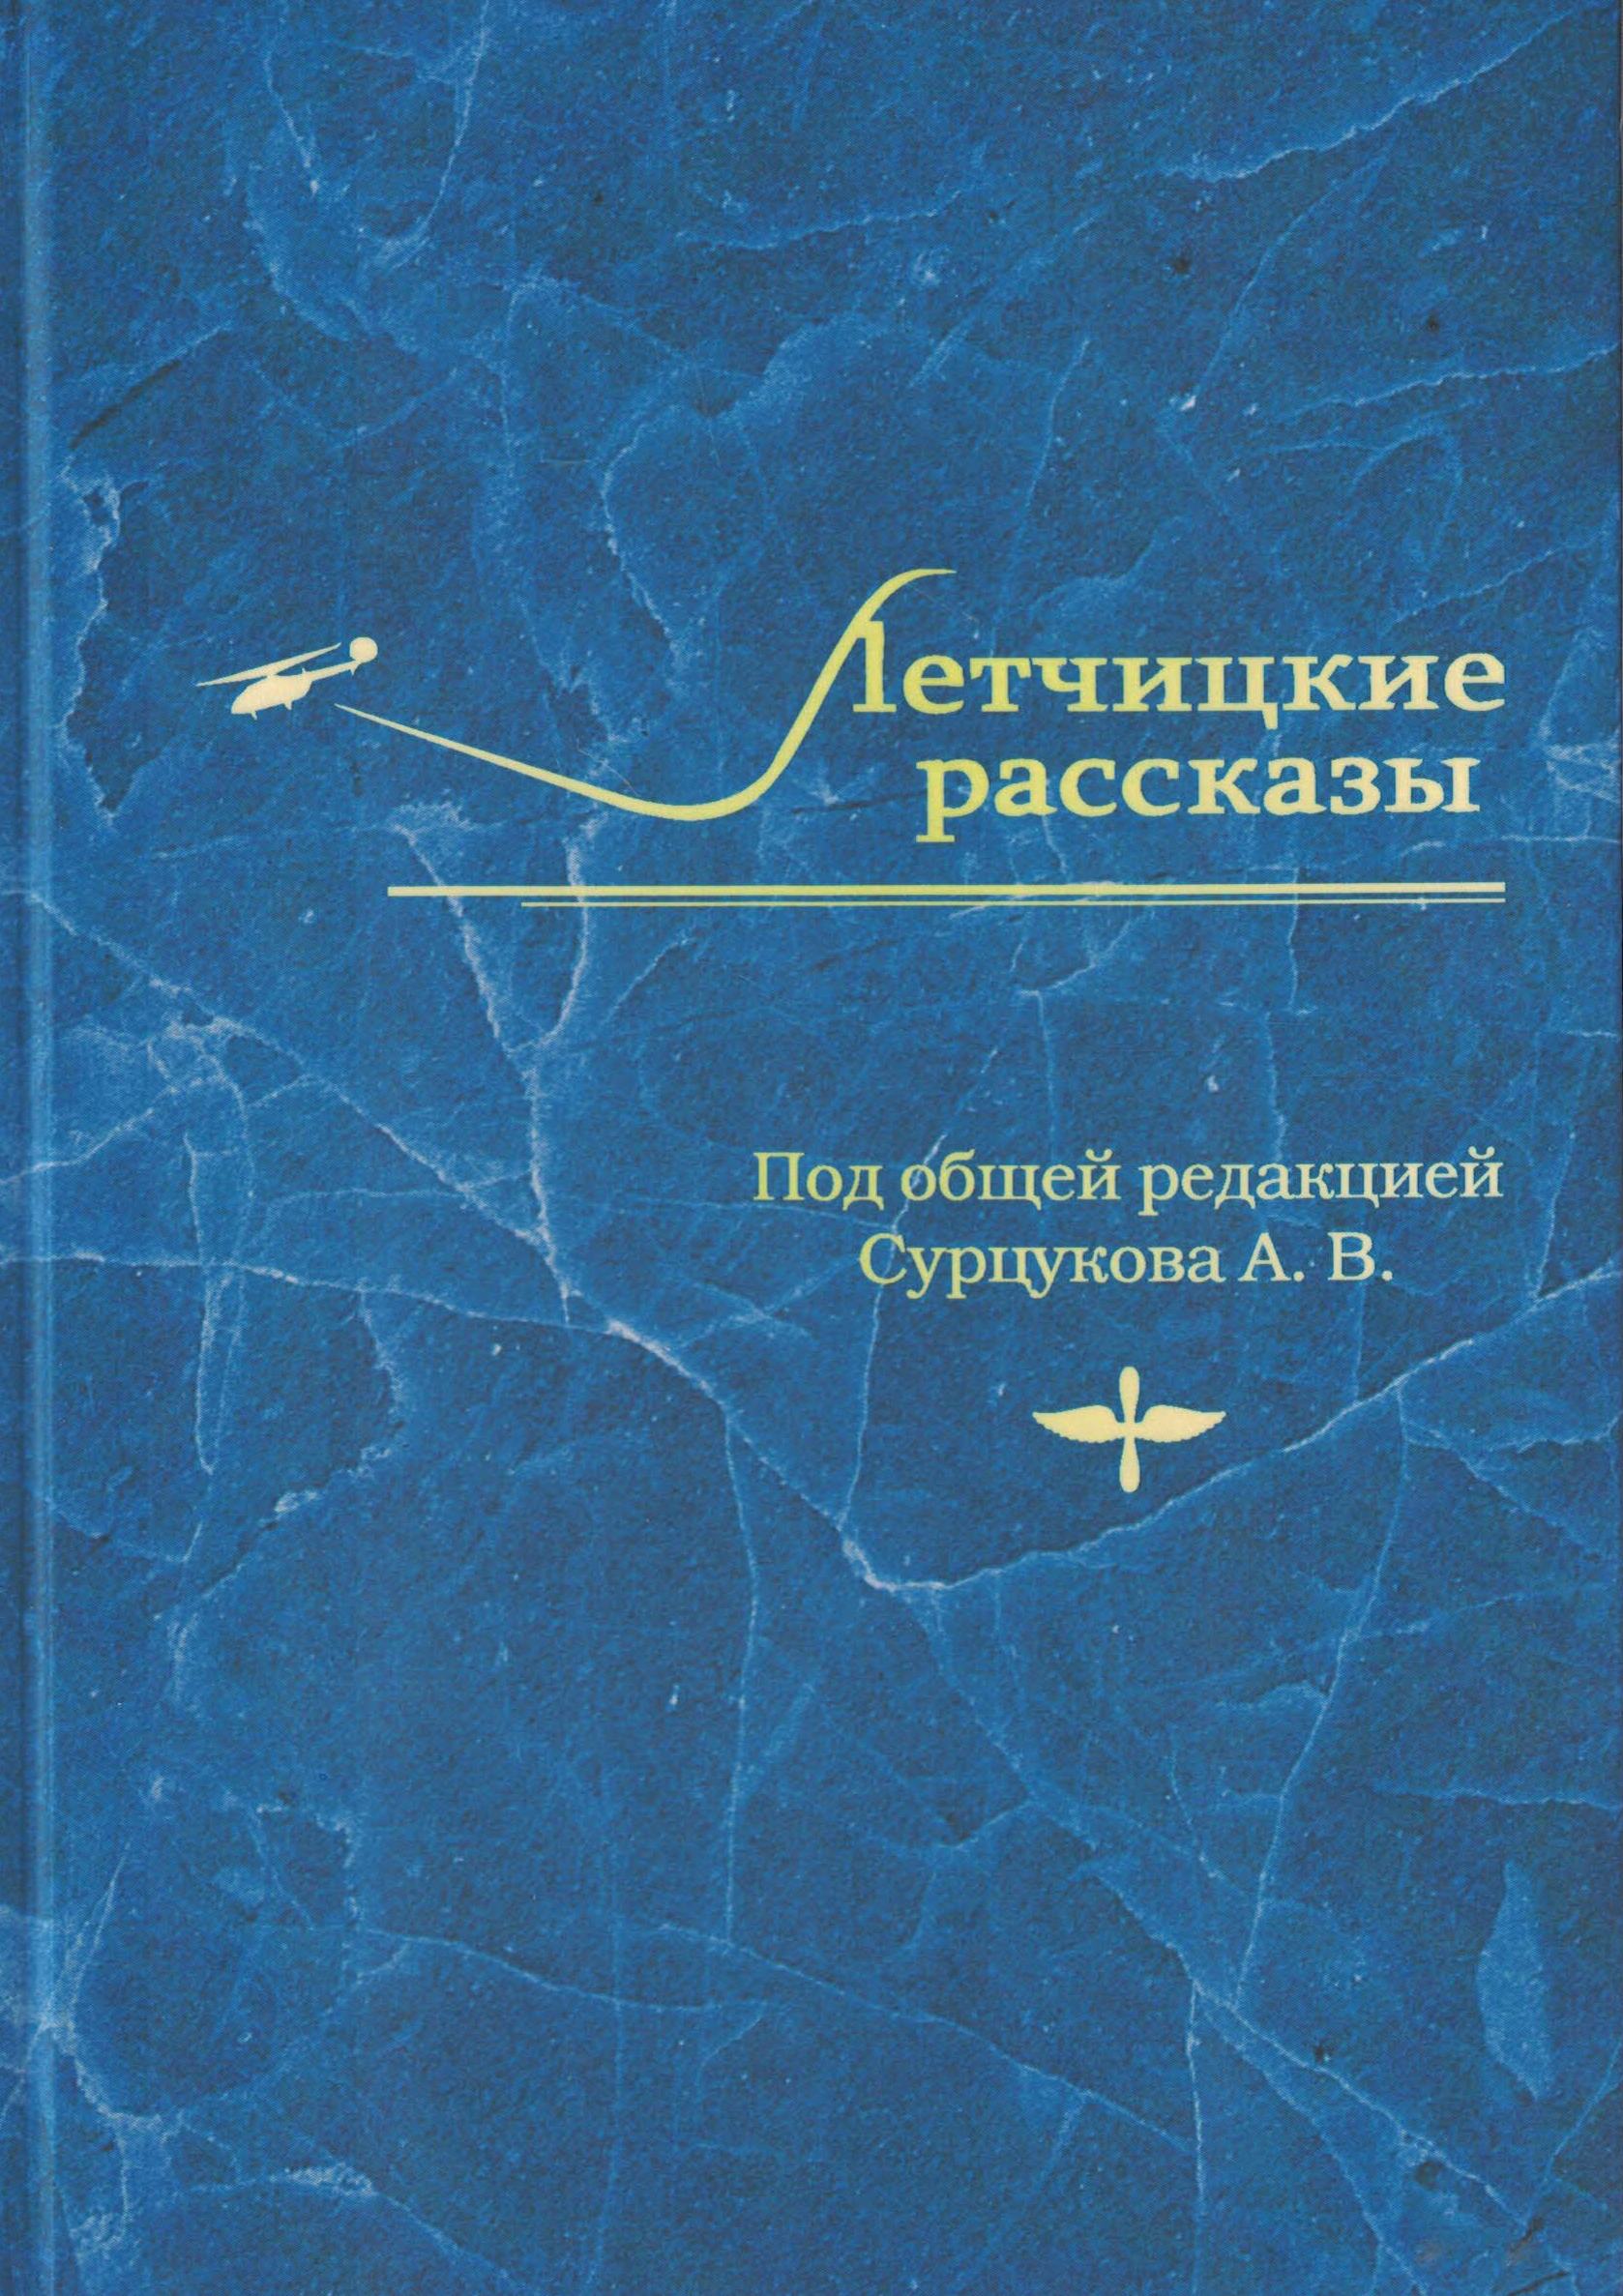 5010381  Сурцуков А.В.  Летчицкие рассказы в 4-х томах